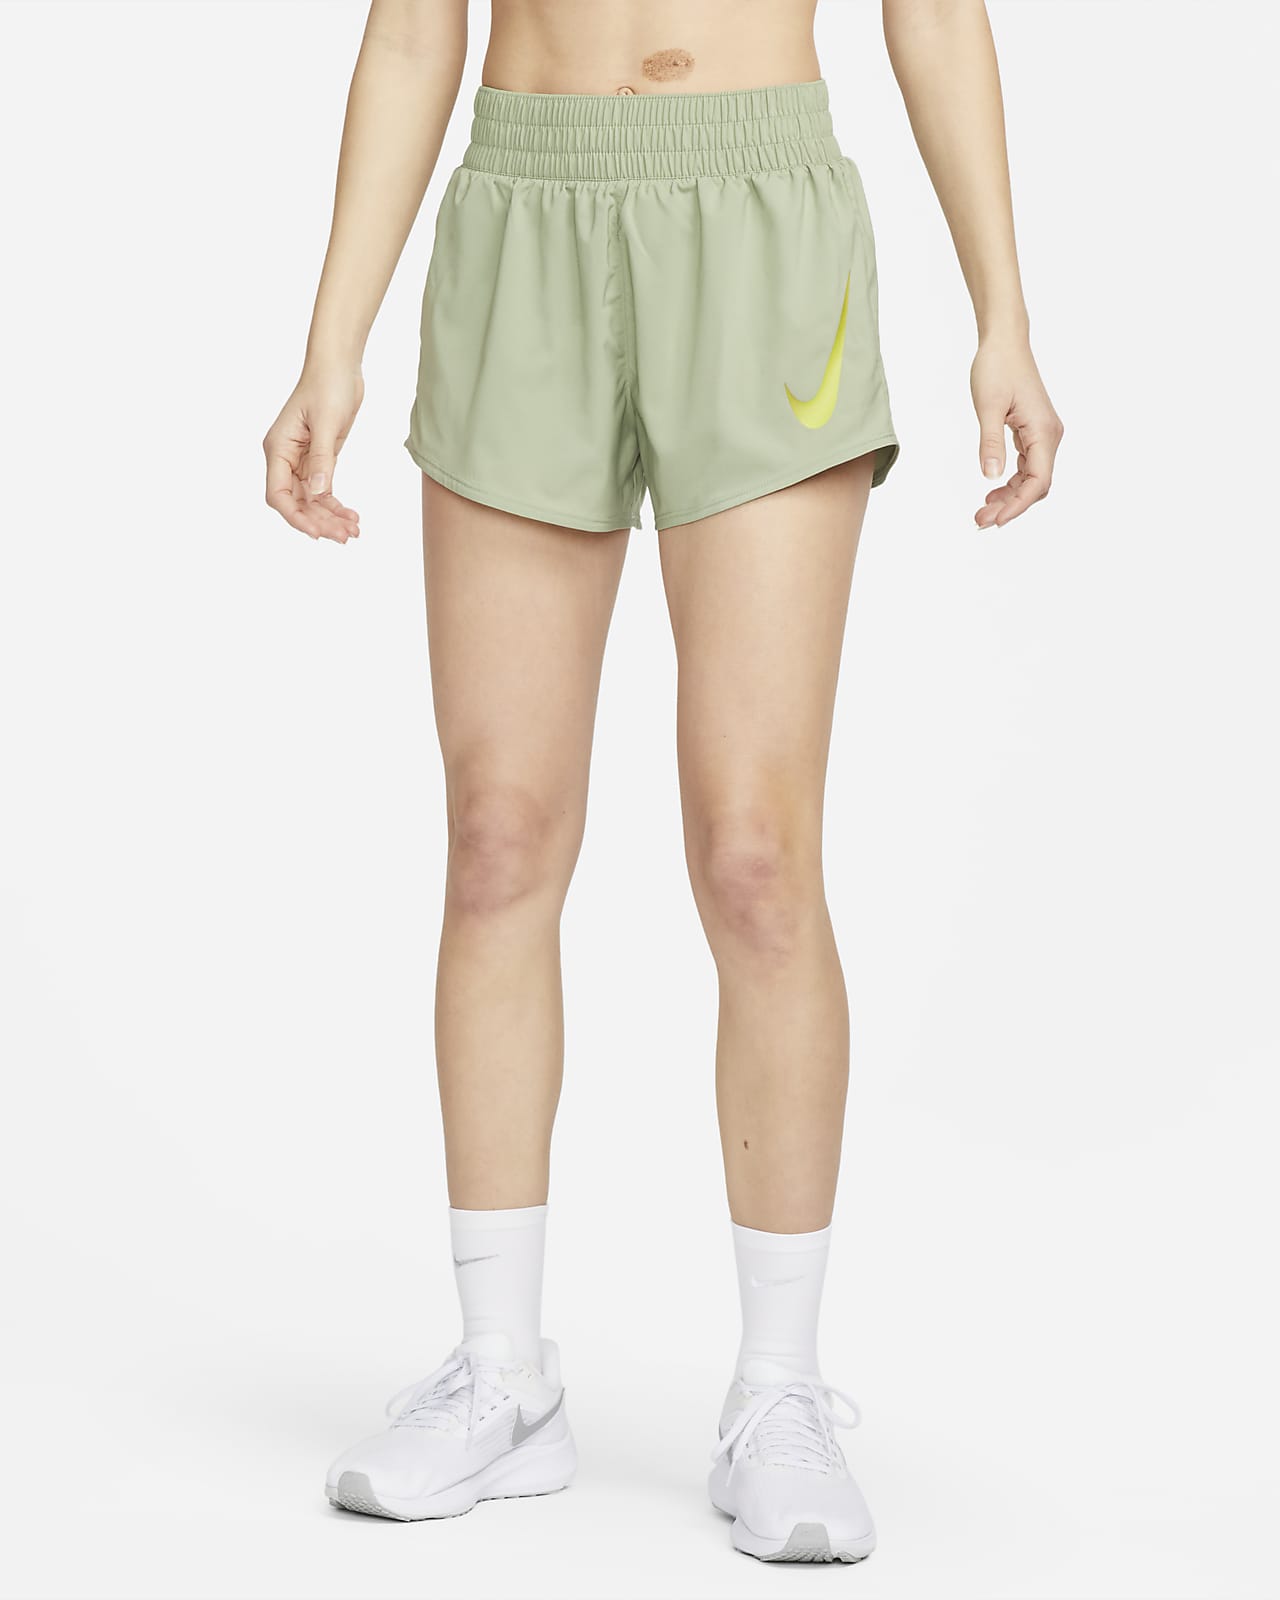 Short de running avec sous-short intégré Nike Swoosh pour femme